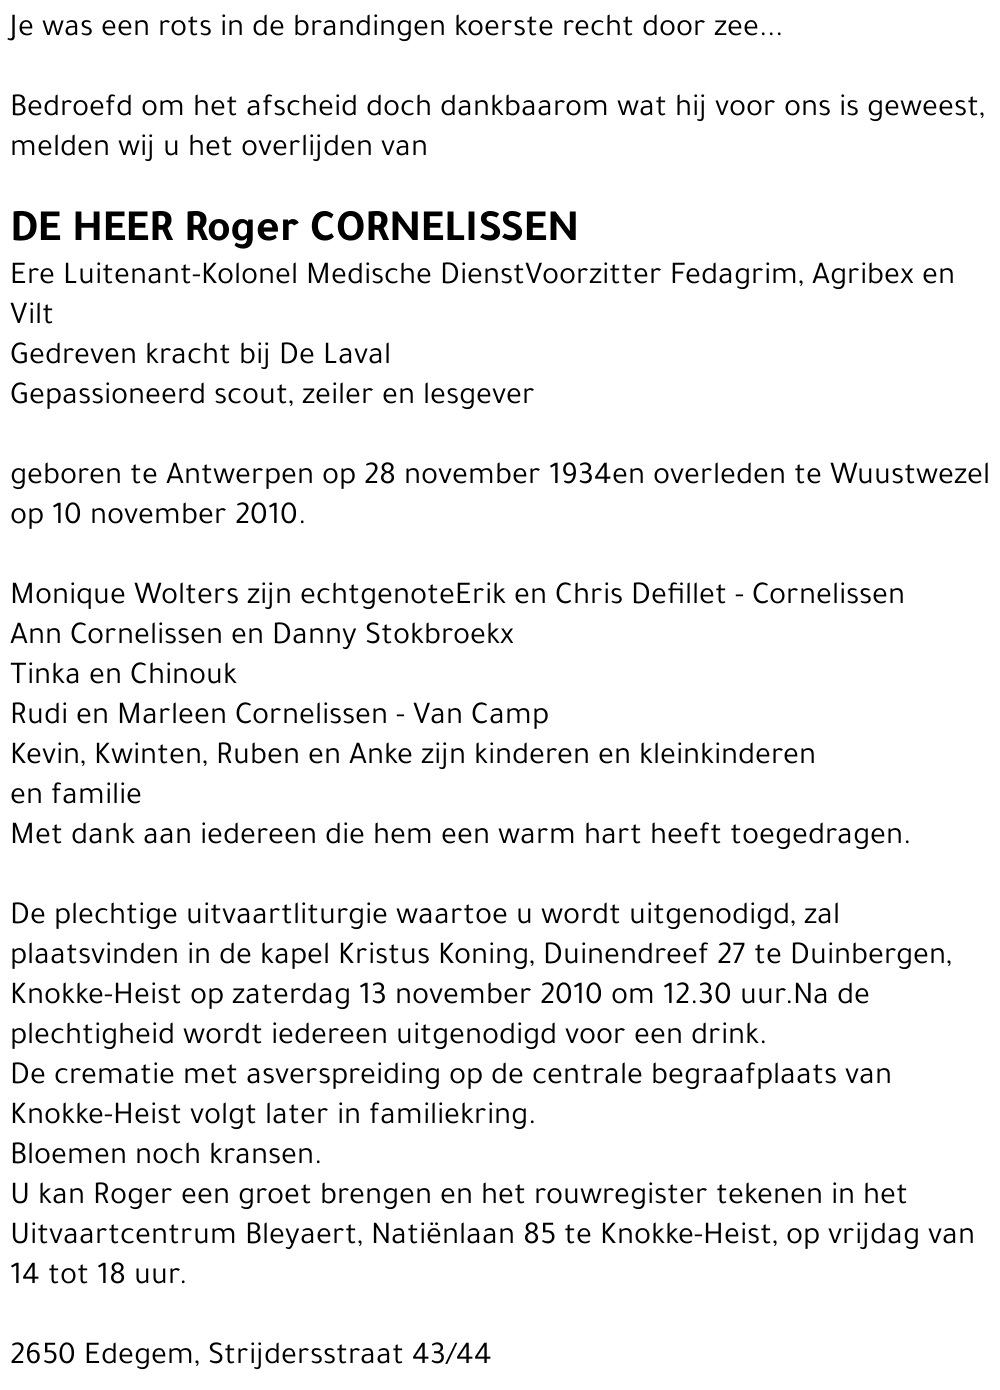 Roger Cornelissen